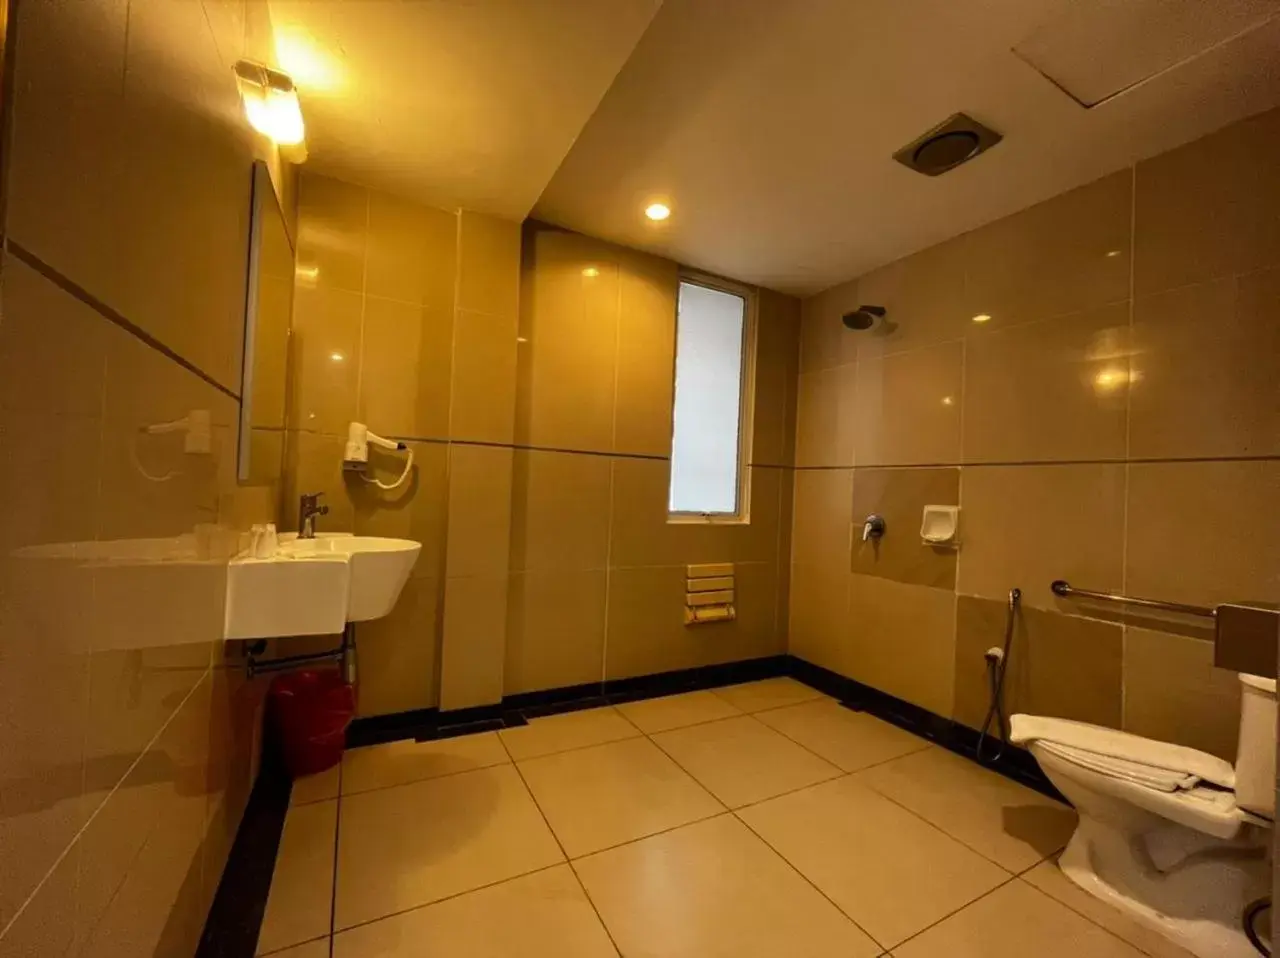 Bathroom in Tune Hotel Georgetown Penang